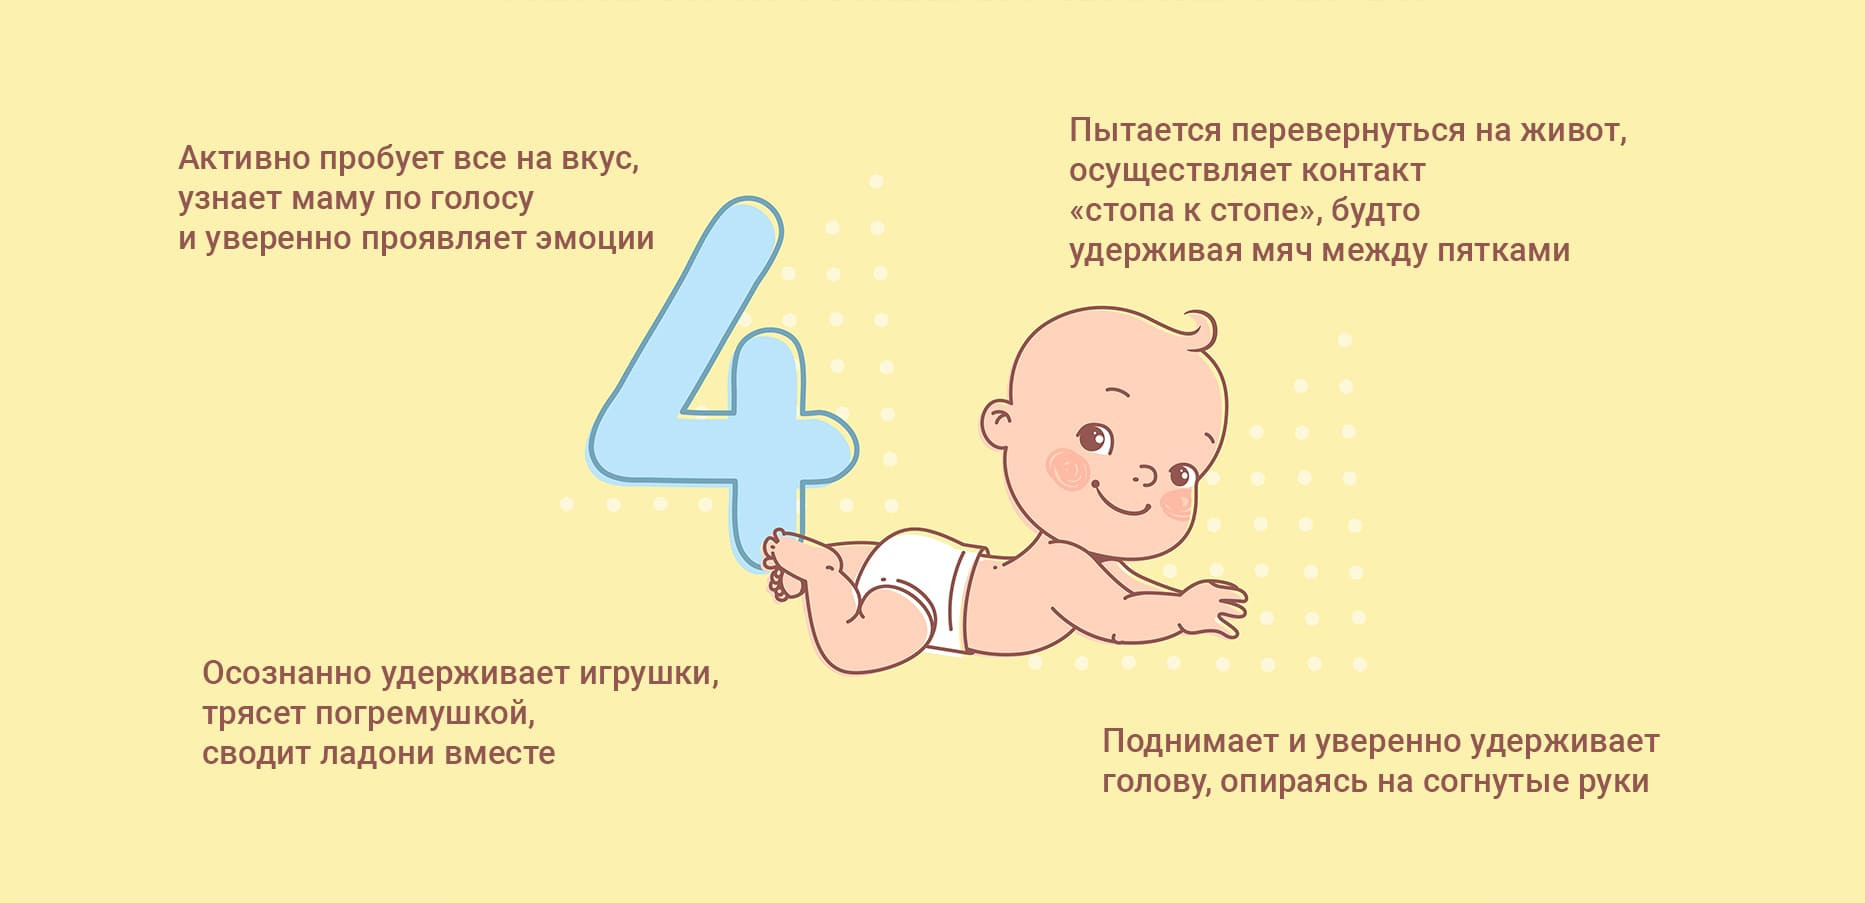 Двигательное развитие ребенка от 0 до 6 месяцев | UNICEF